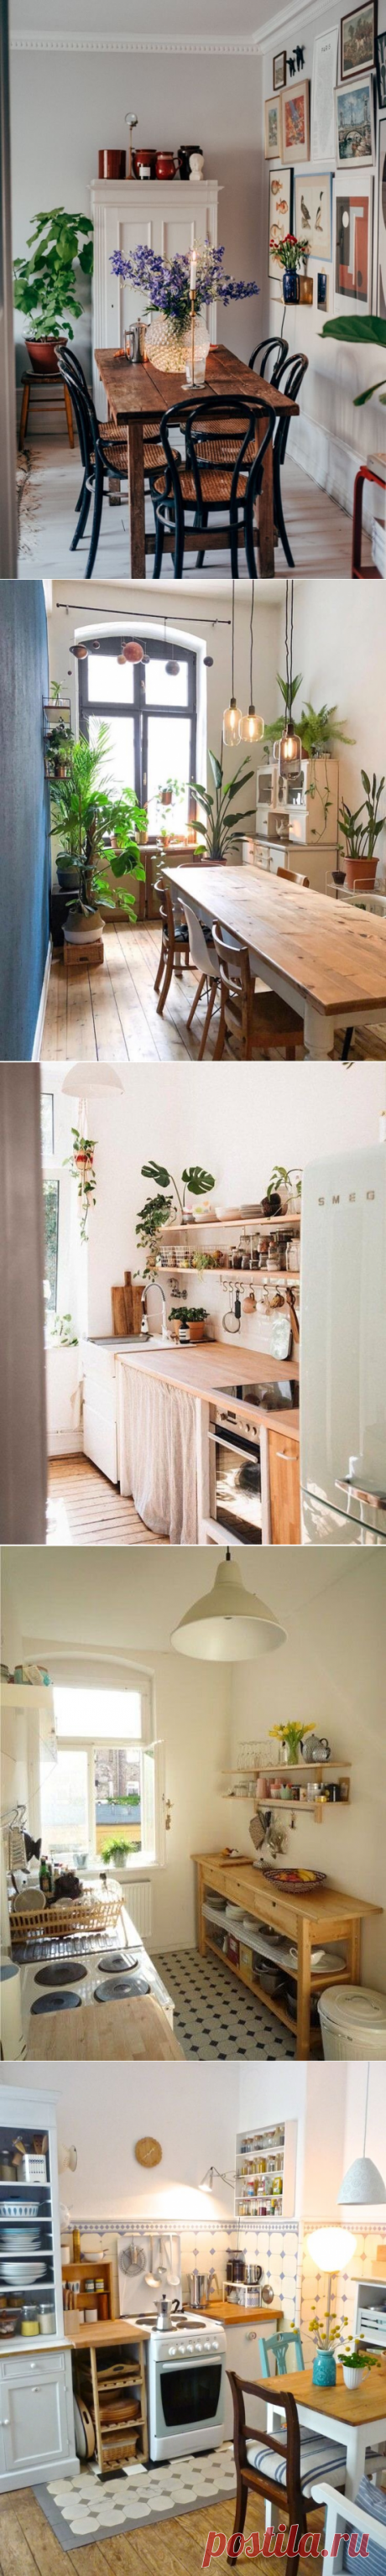 Дизайн ЭКО кухонь в квартире и простые идеи хранения | Анастасия Ефимова | Яндекс Дзен